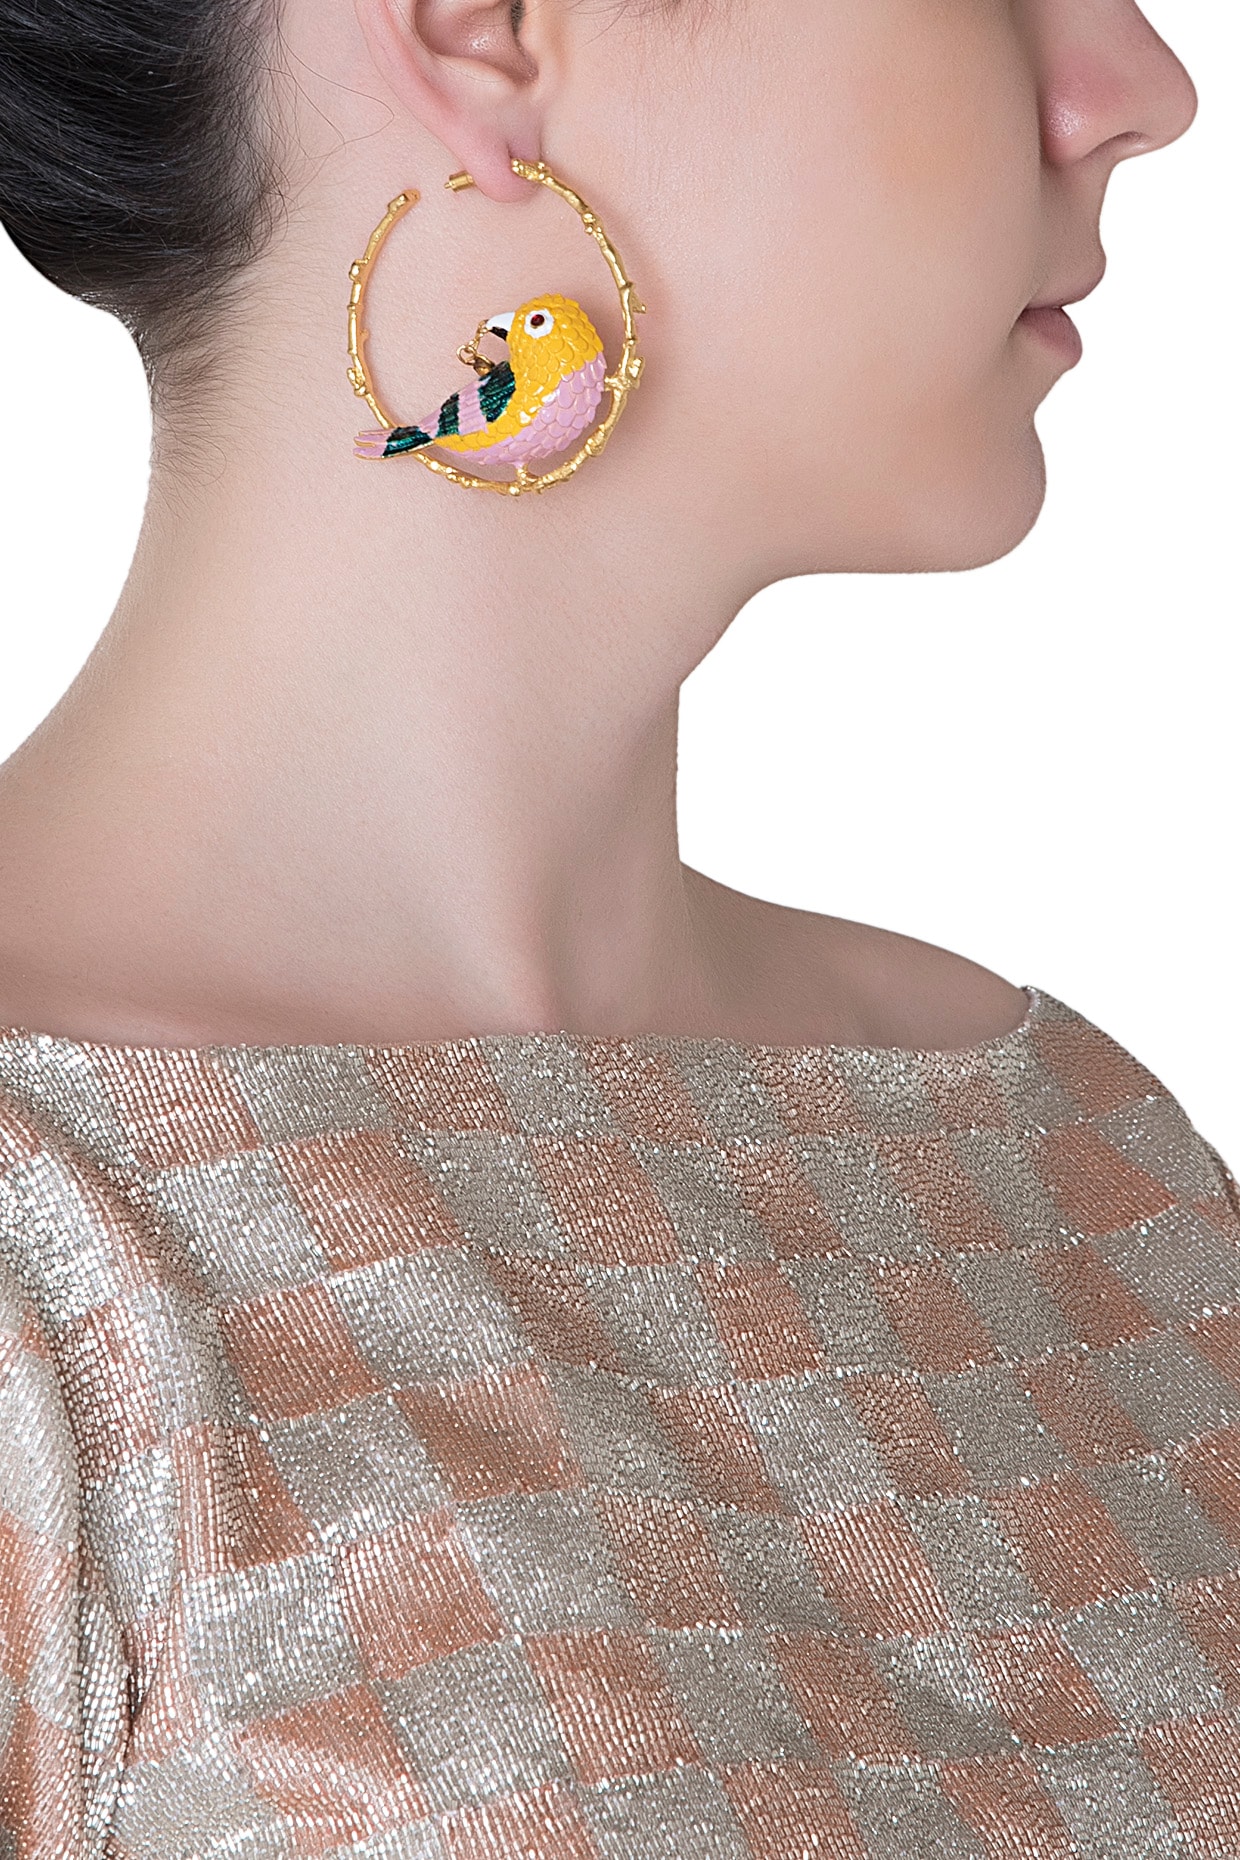 Handpainted Meenakari Work Flower Design Gold Plated Layered Pearl Jaal Hoop  Earrings for Women and Girls